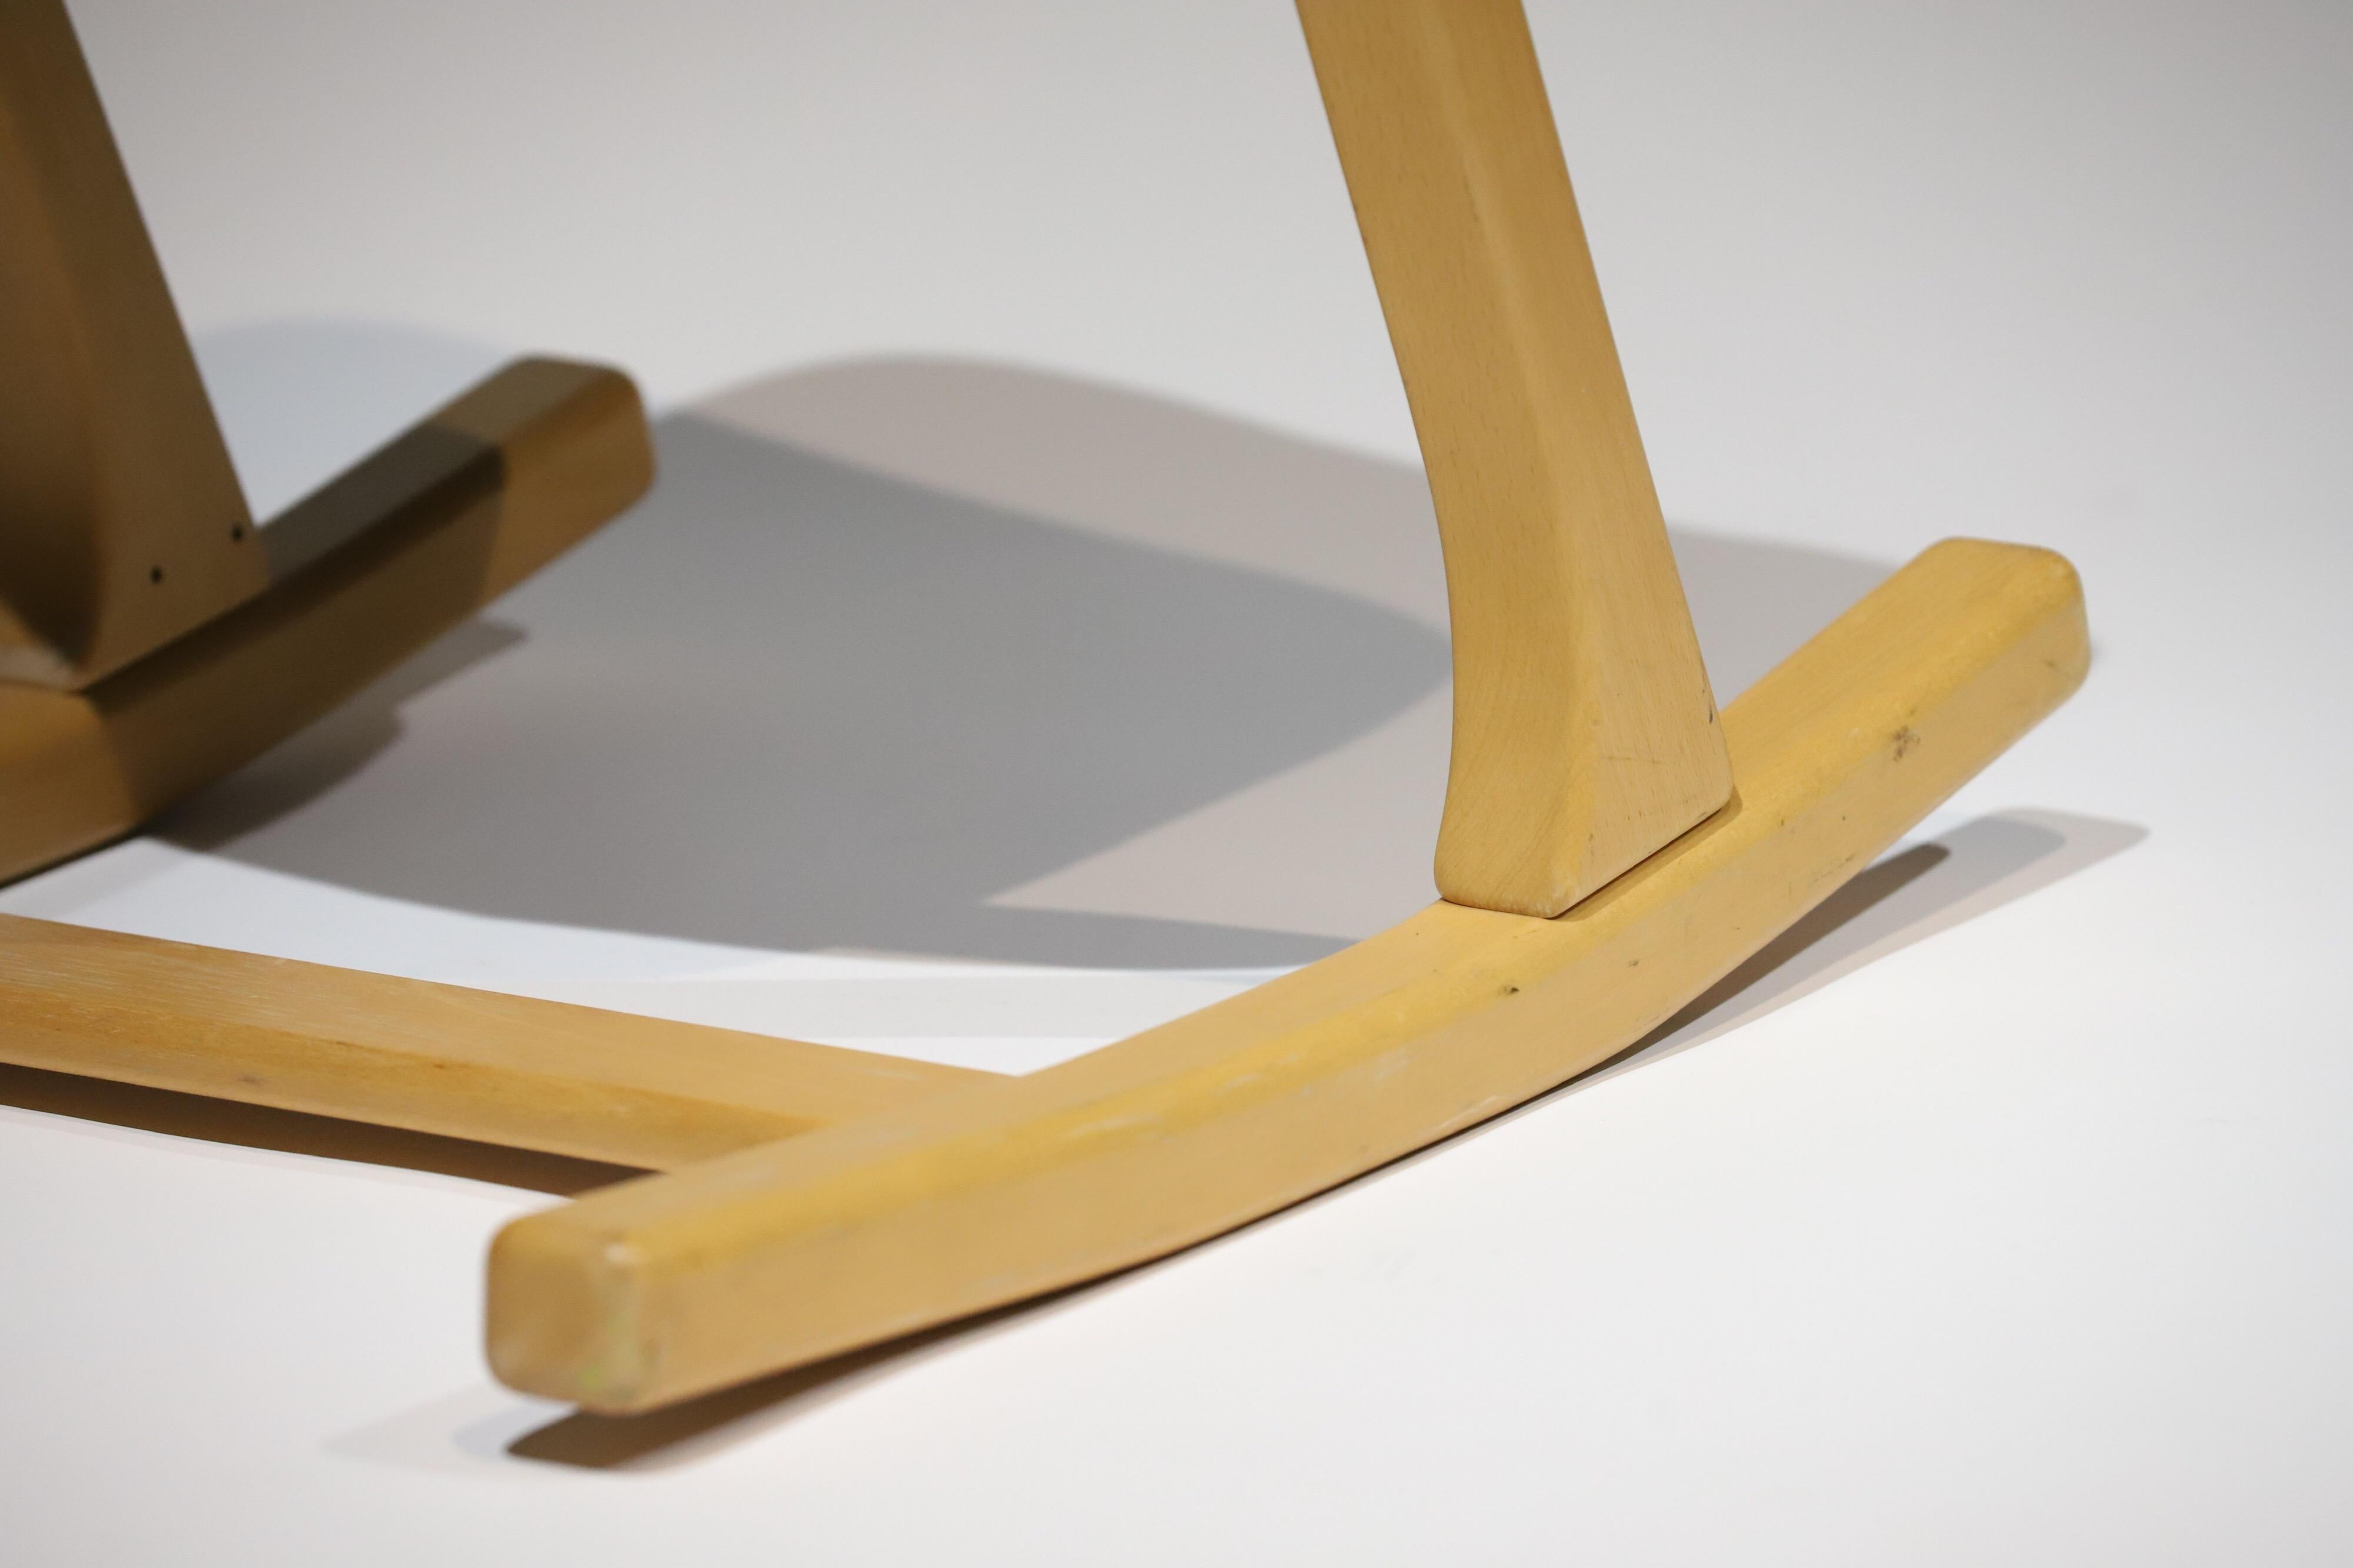 Beech Pendulum Rocking Chair by Peter Opsvik